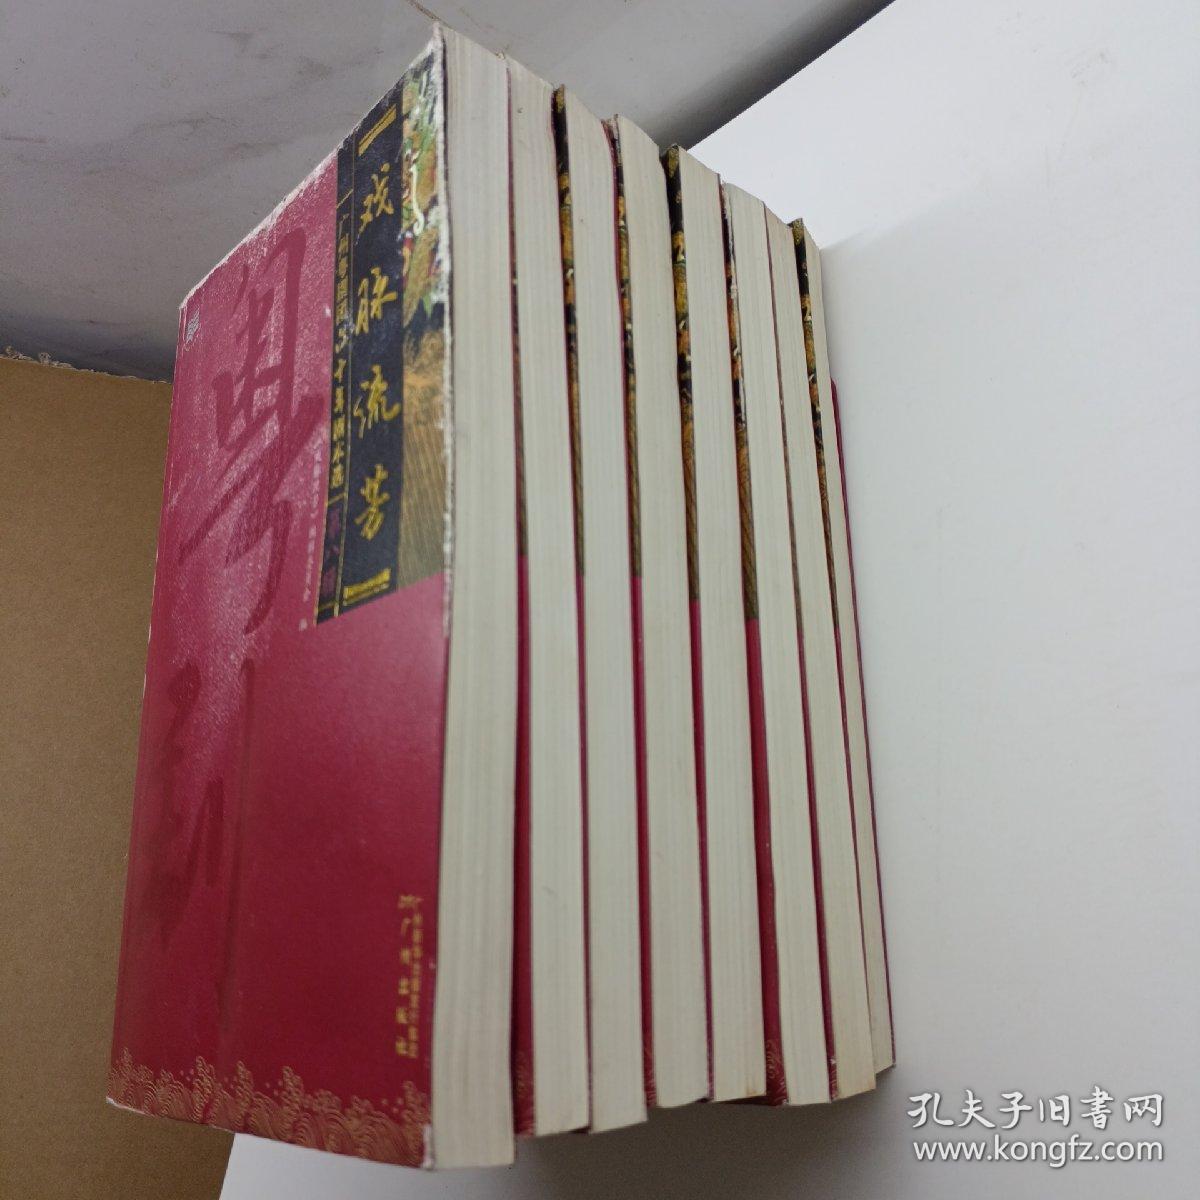 广州粤剧团六十年剧本选：戏脉流芳（共8册）5本有水印如图 无字迹划线